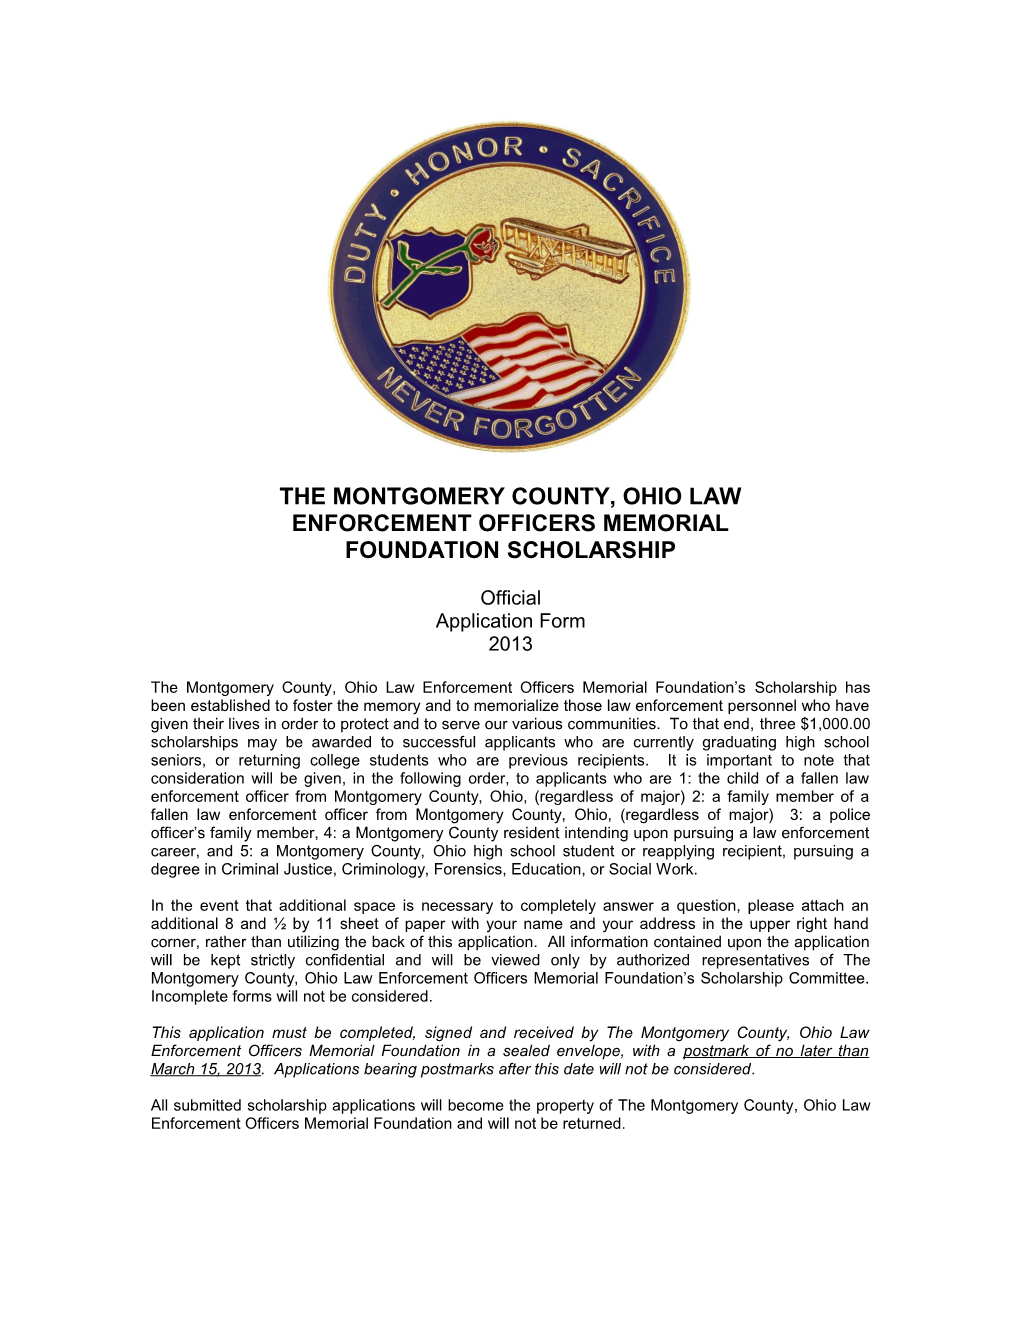 The Montgomery County, Ohio Law